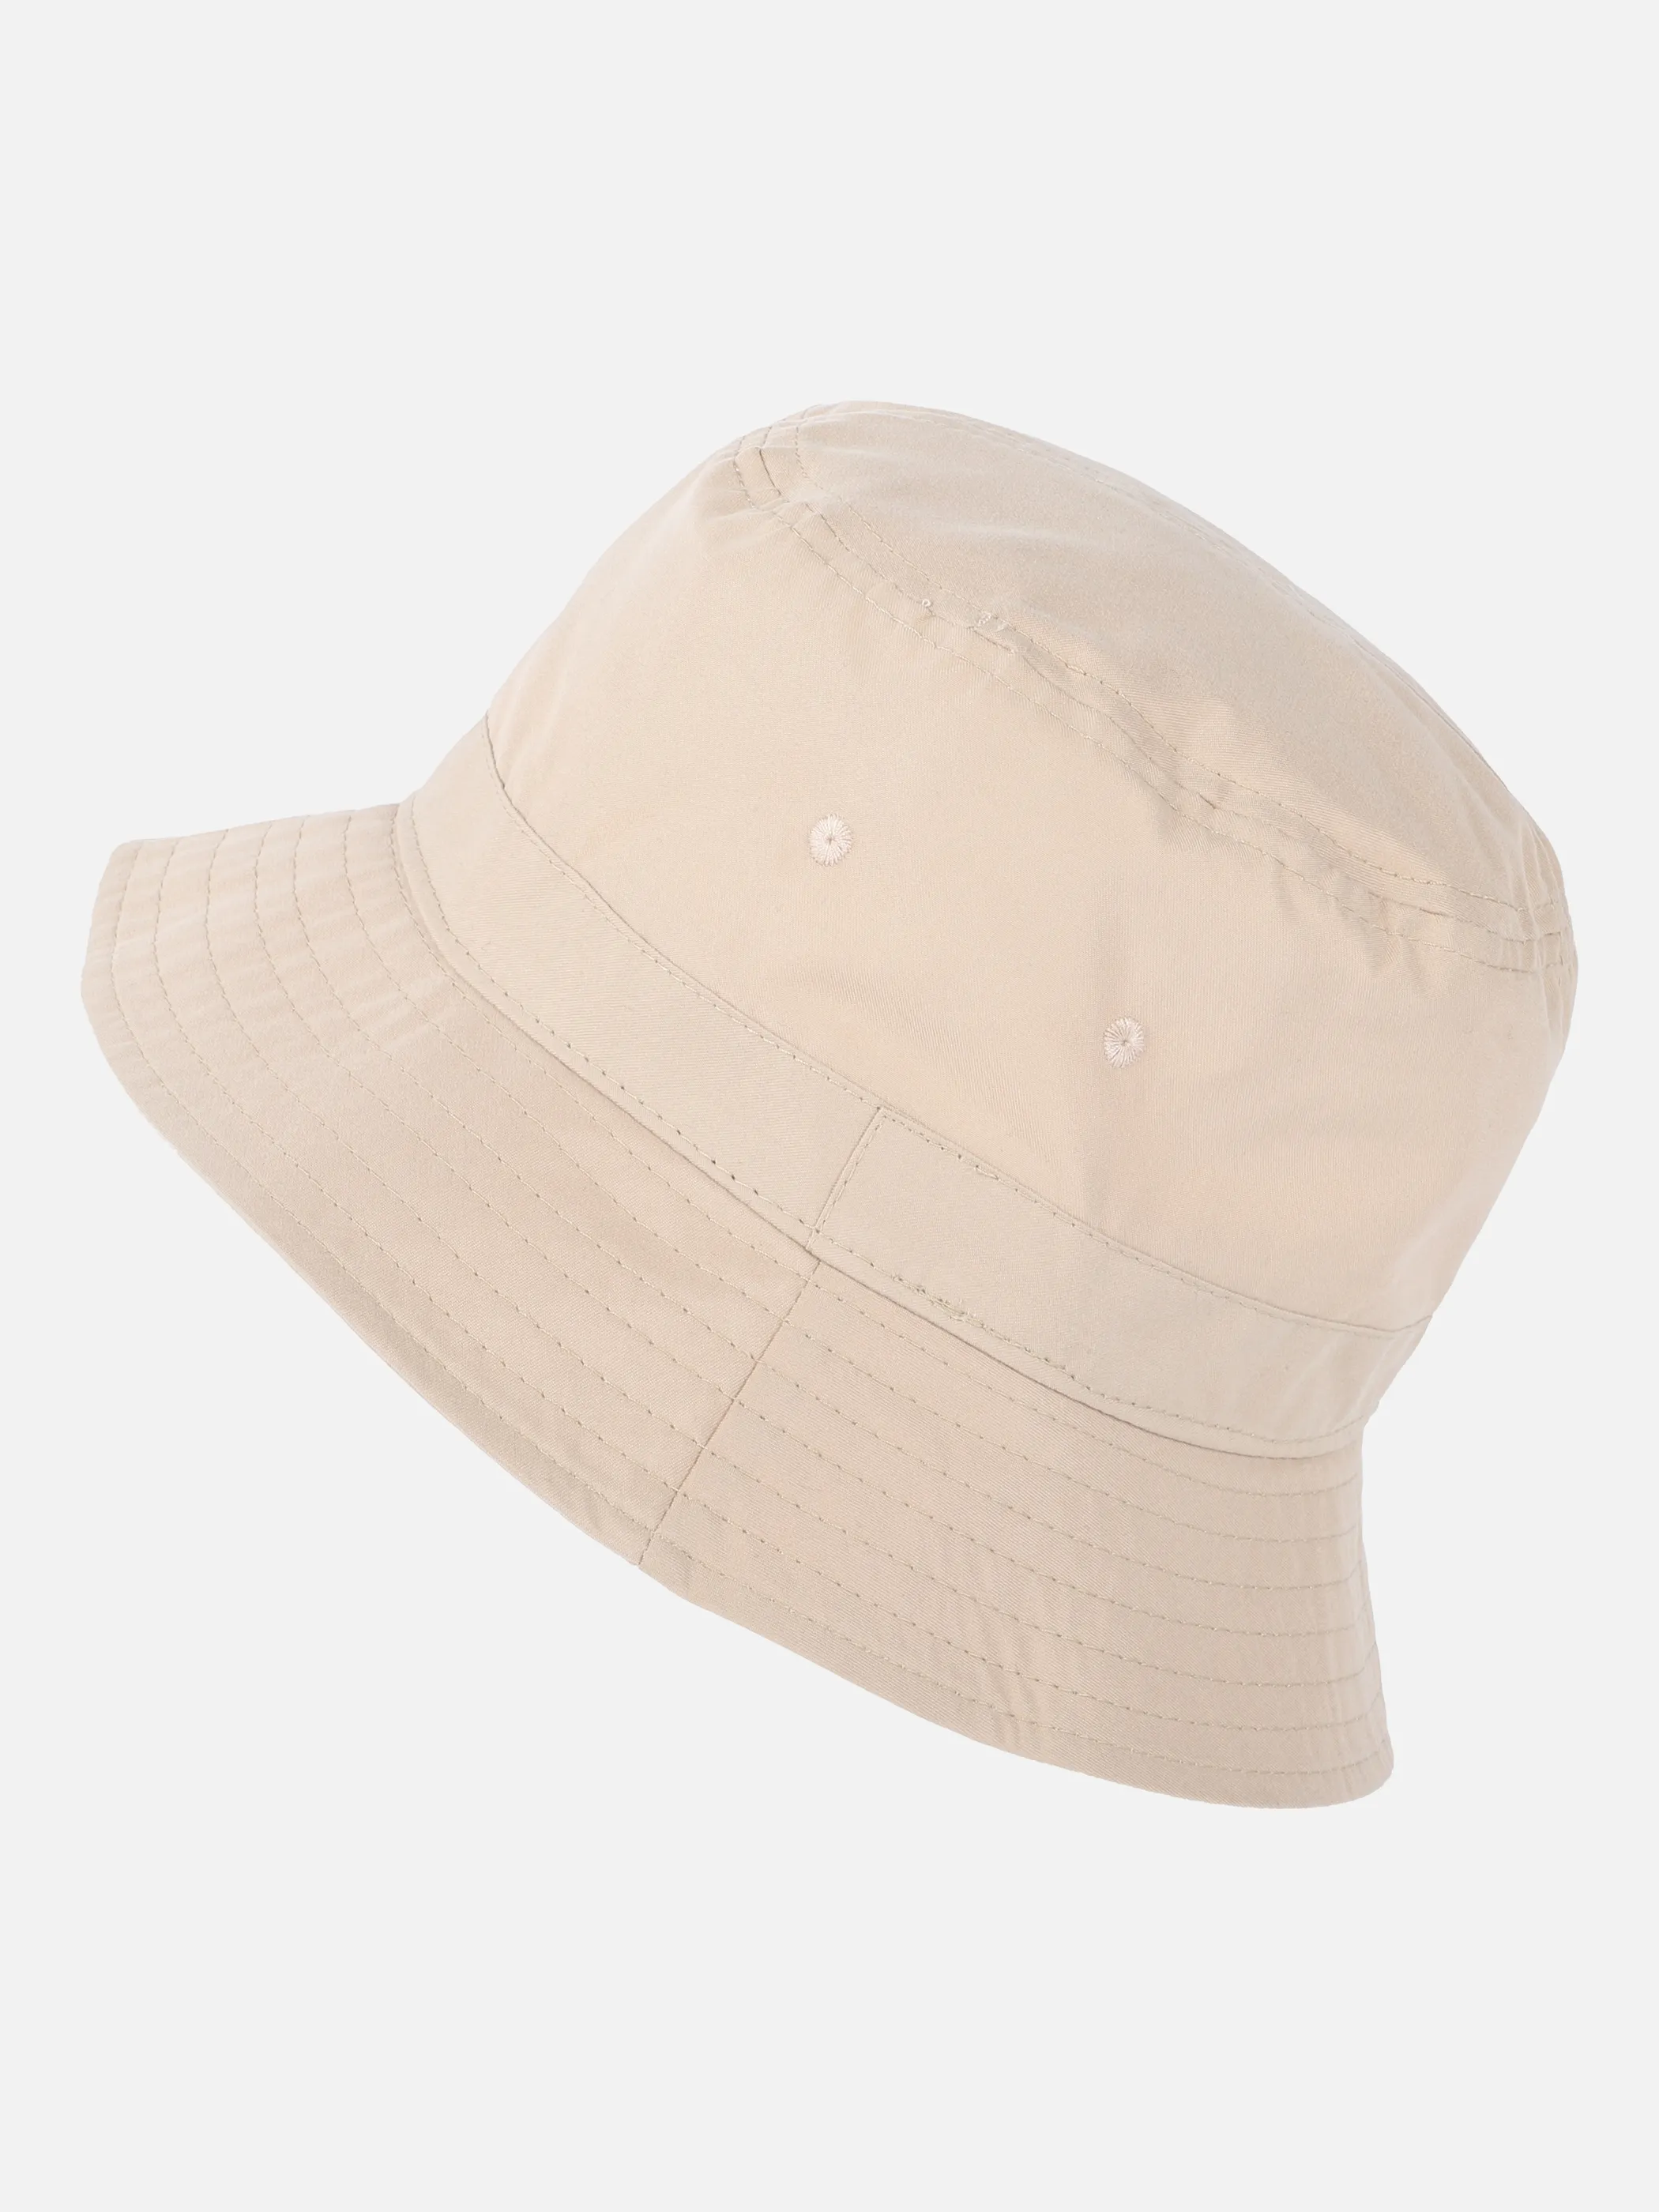 Mützen, Caps AWG günstig | jetzt für online kaufen Hüte Herren & Mode